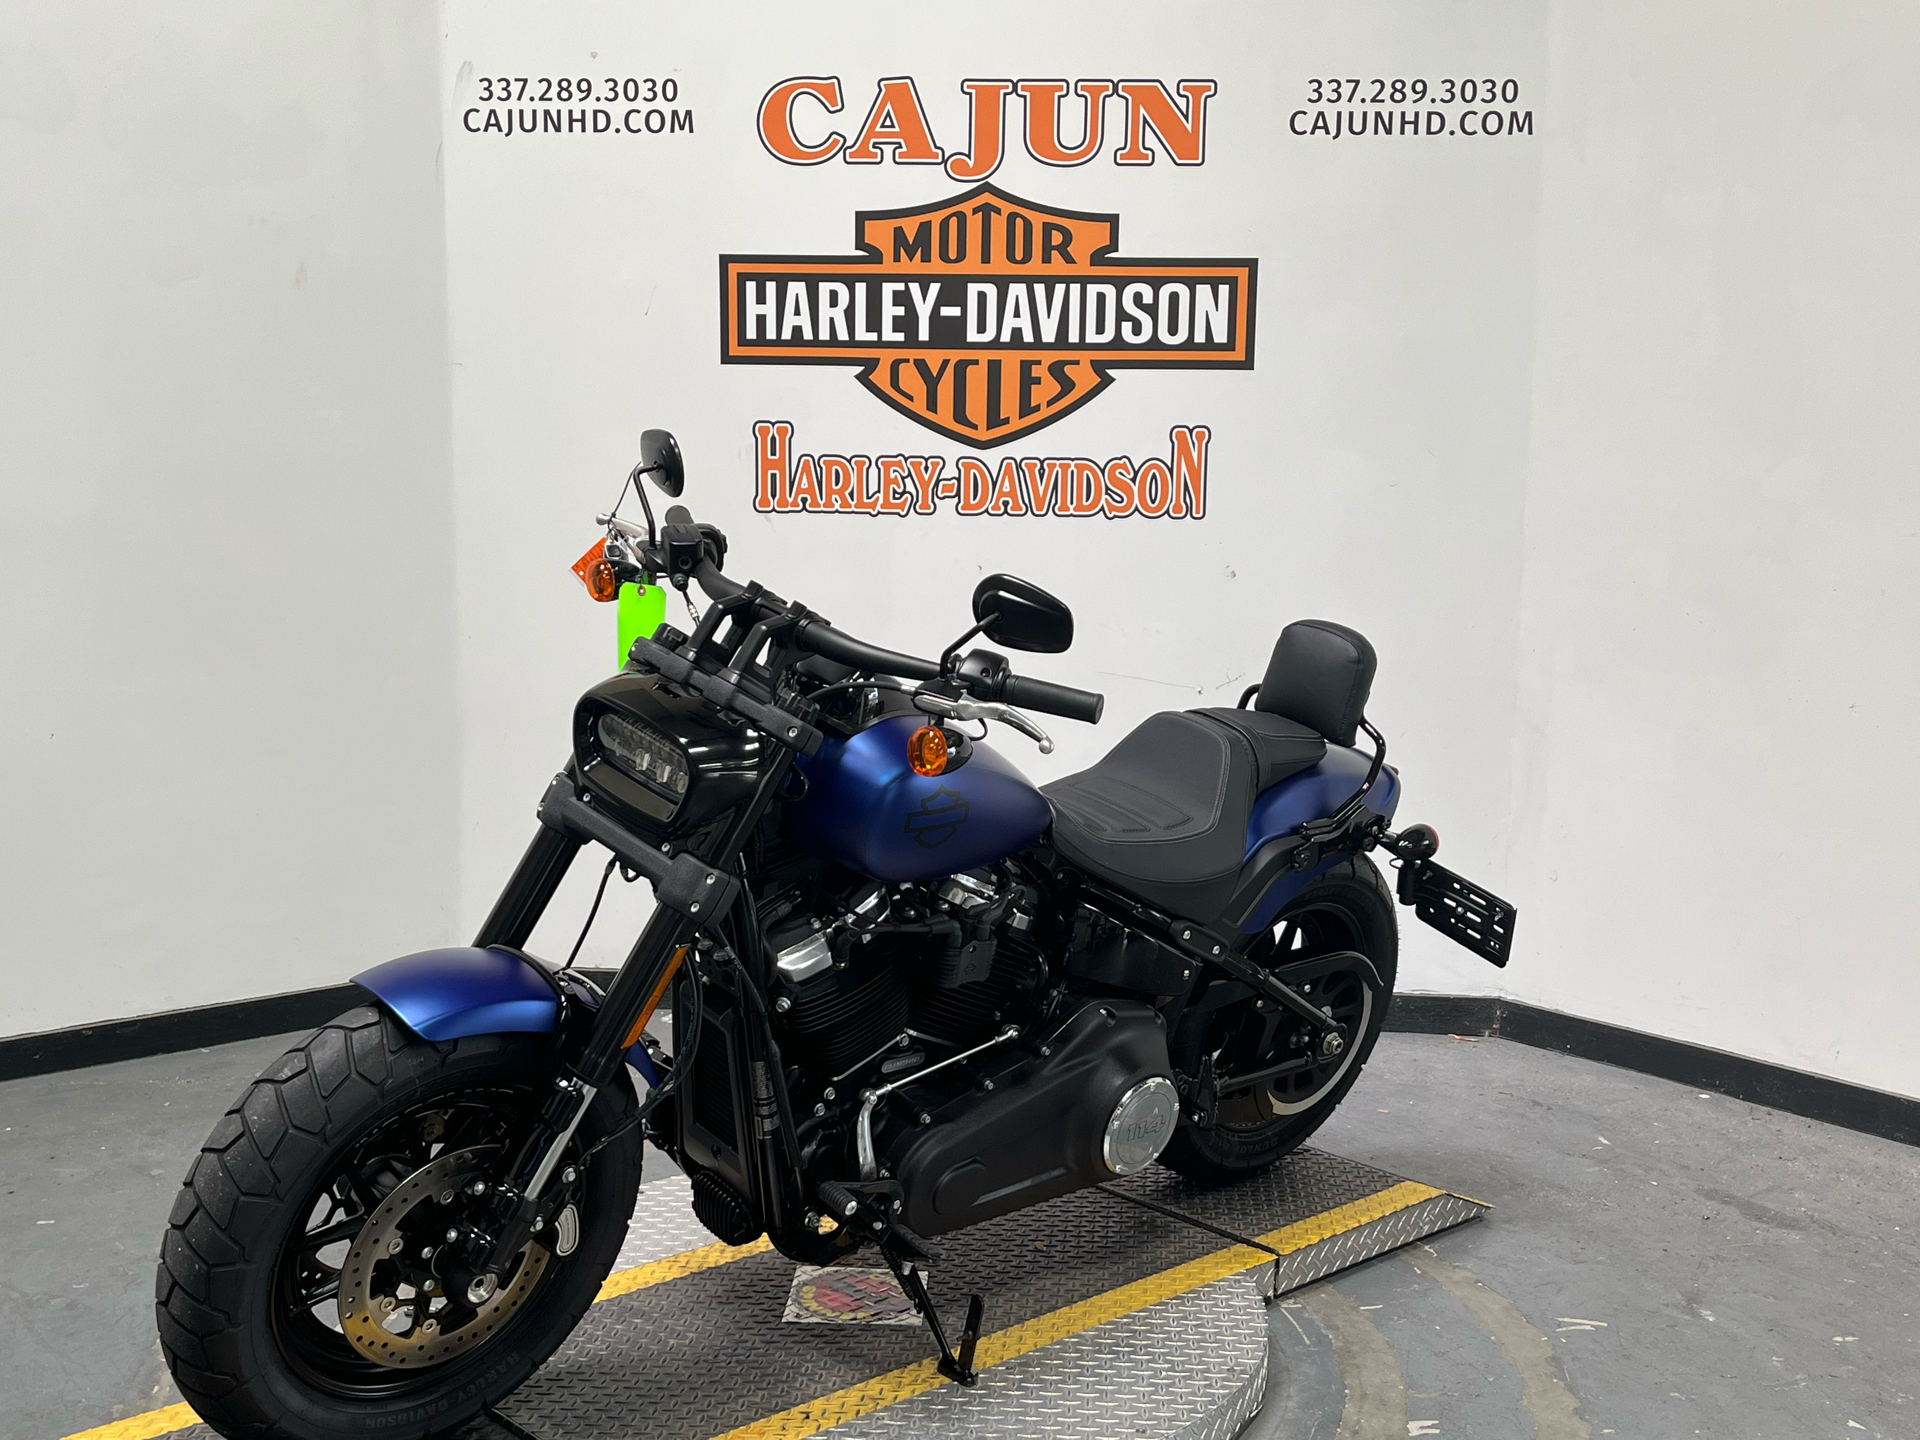 2021 Harley-Davidson Fat Boy near me - Photo 5